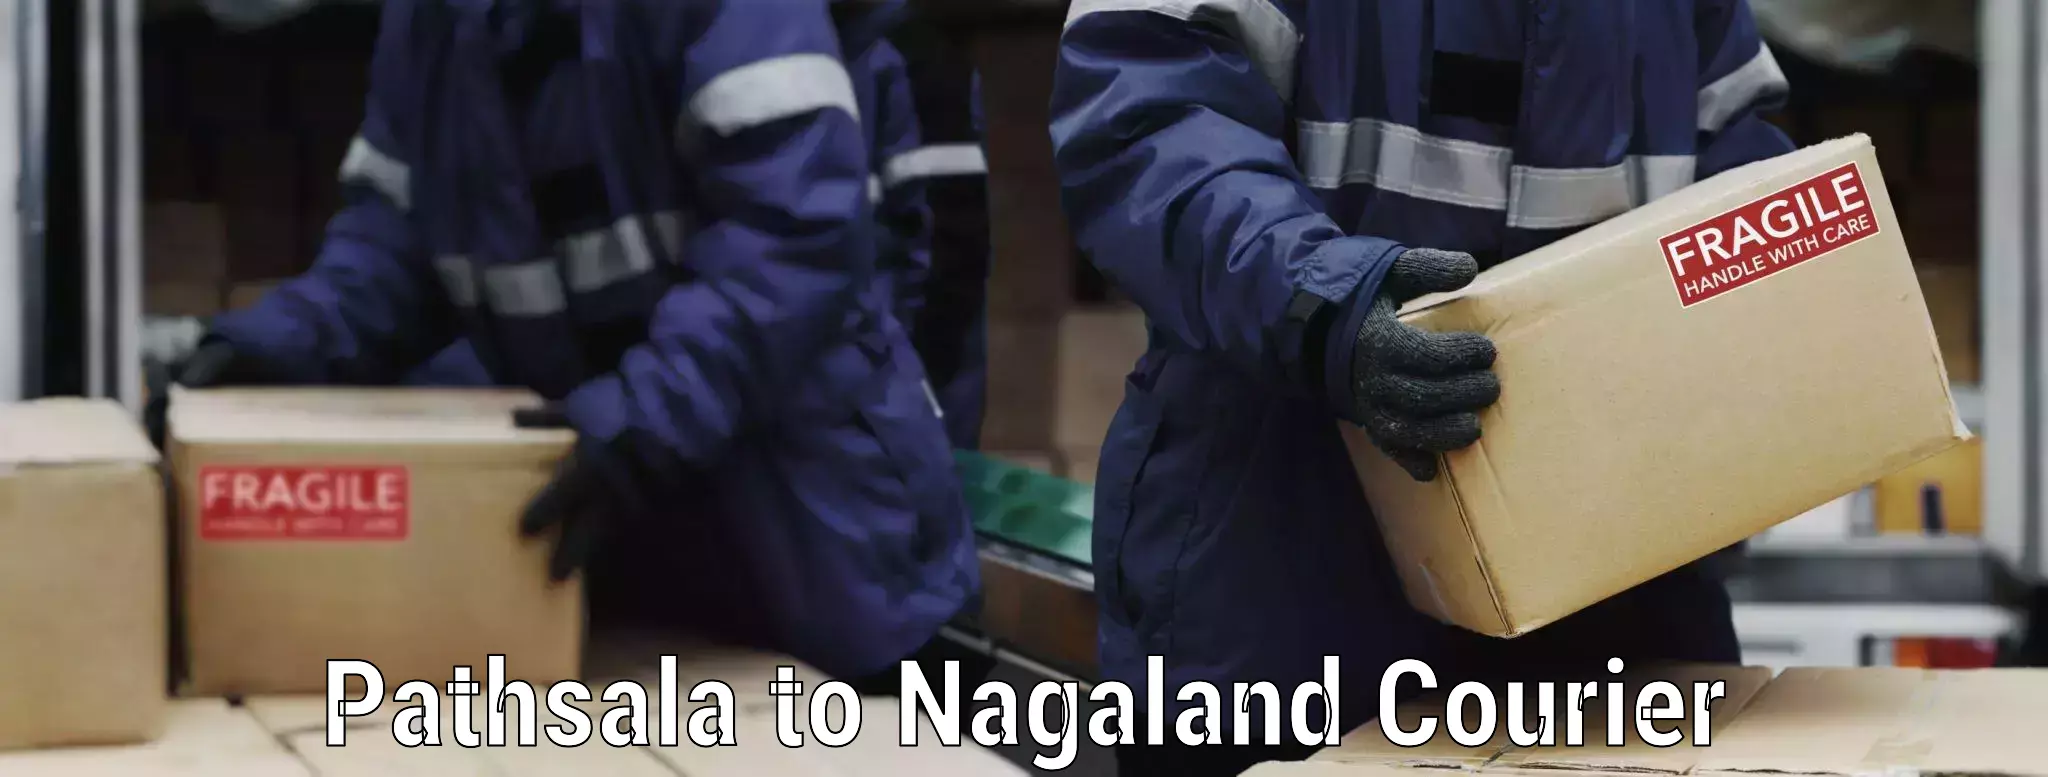 Efficient furniture shifting Pathsala to Nagaland